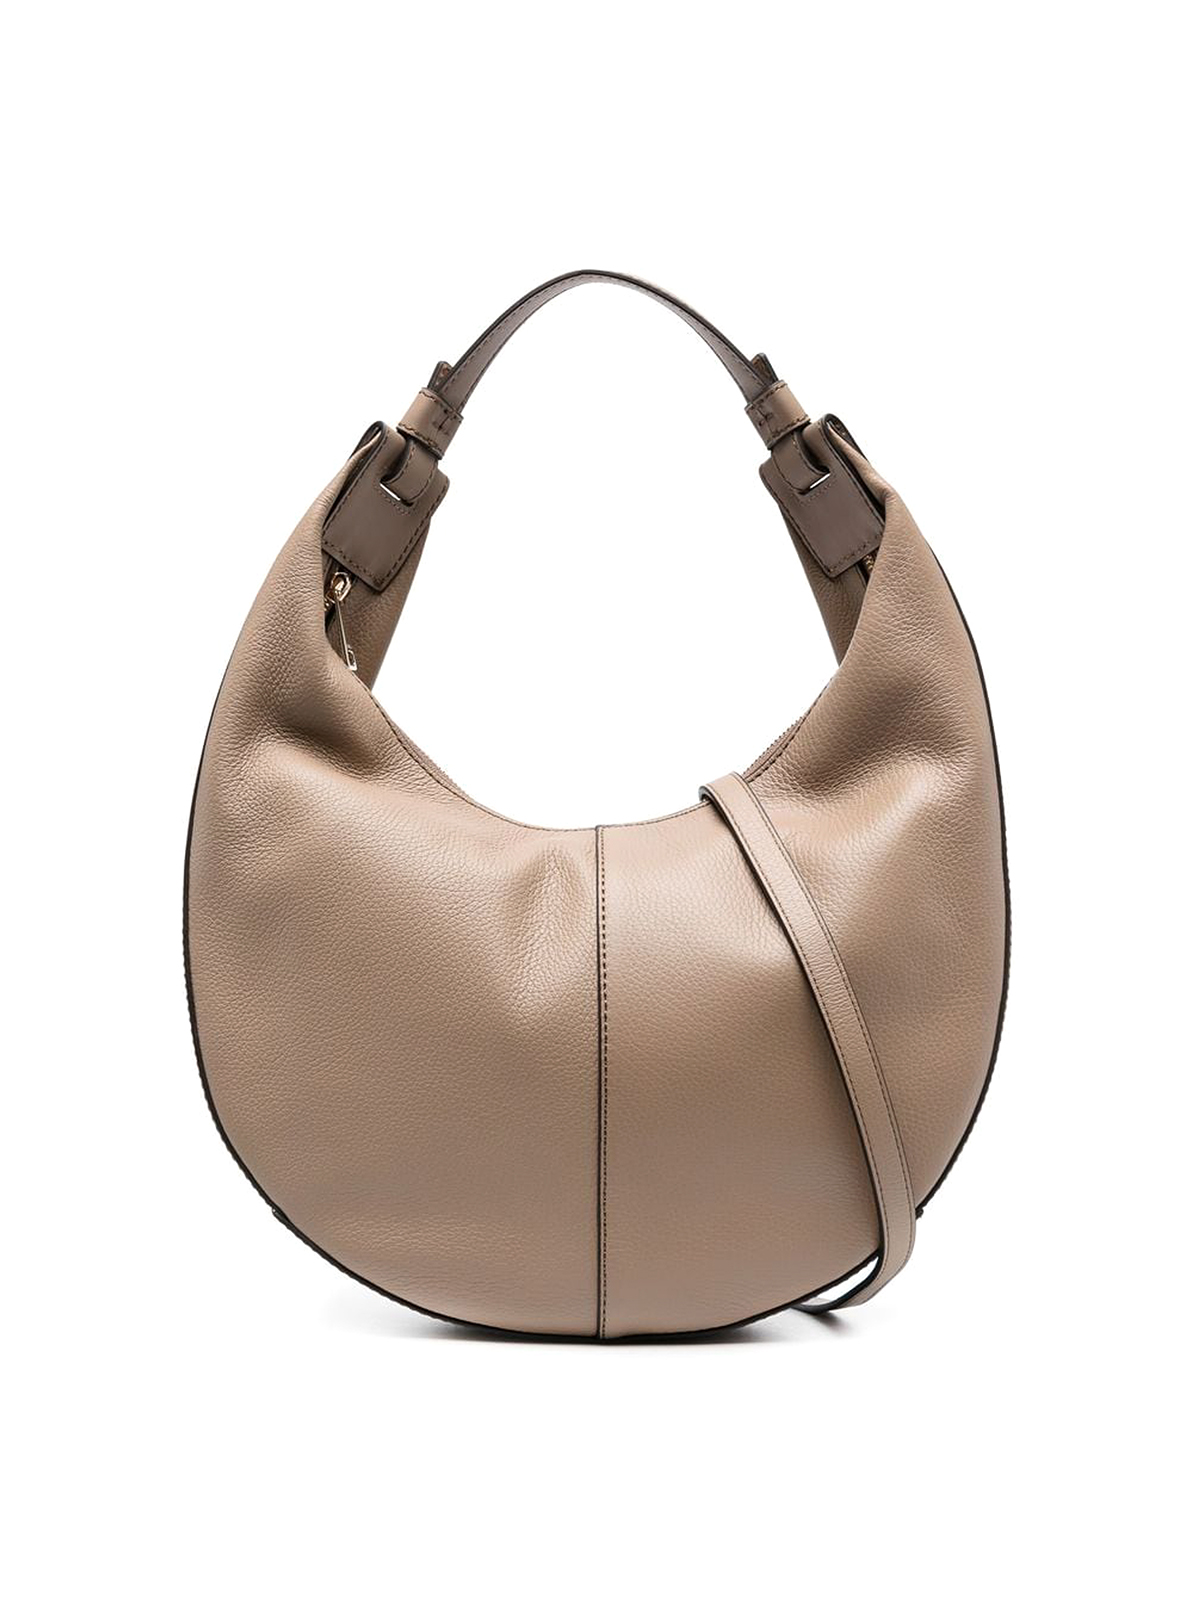 Furla Miastella Handbag in Brown